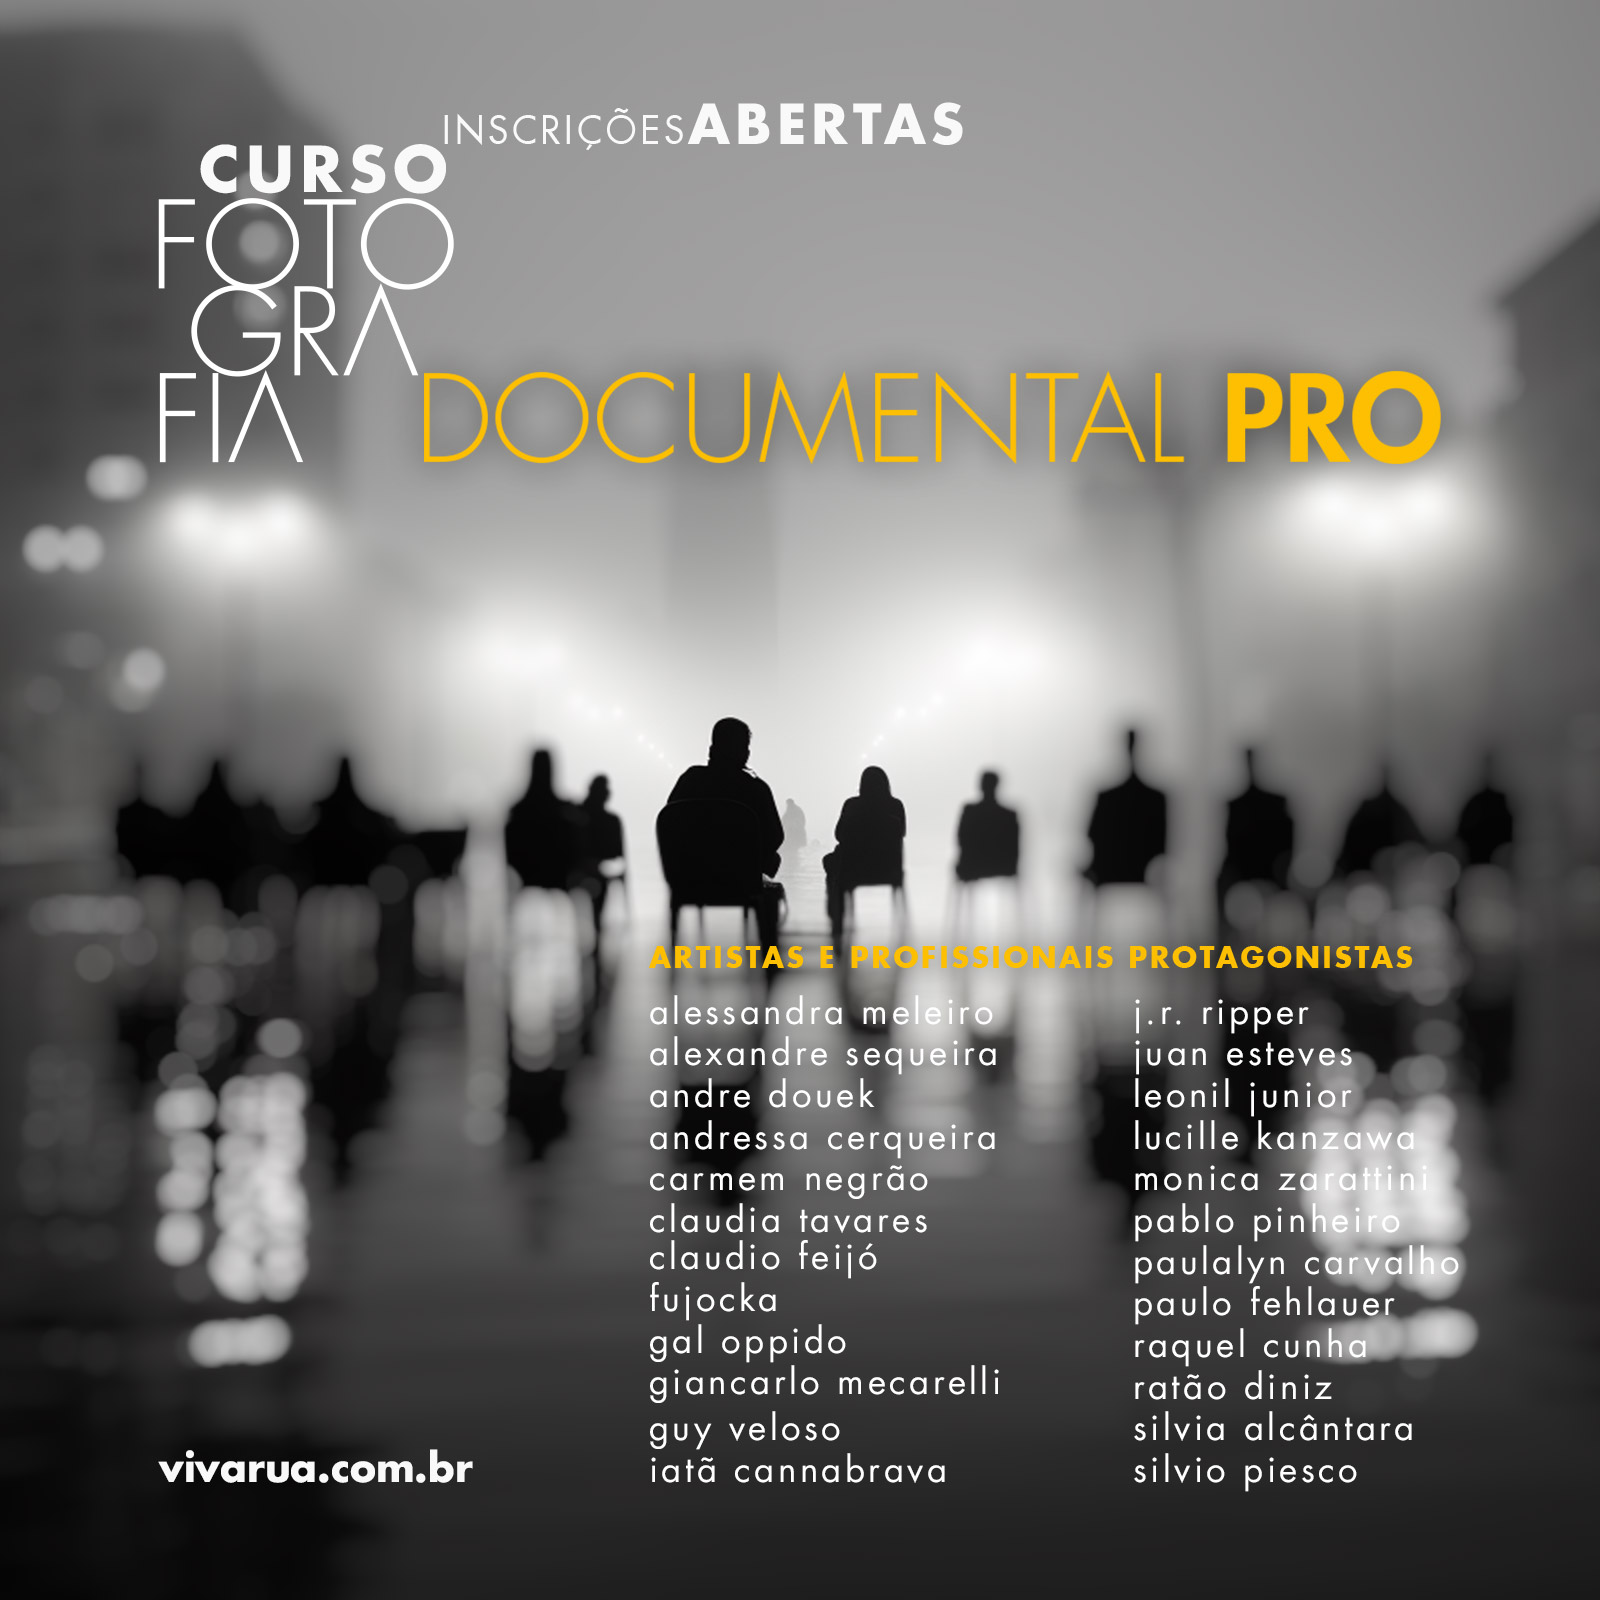 Curso de Fotografia Documental Pro | Com artistas e profissionais protagonistas  - VivaRua Fotografia